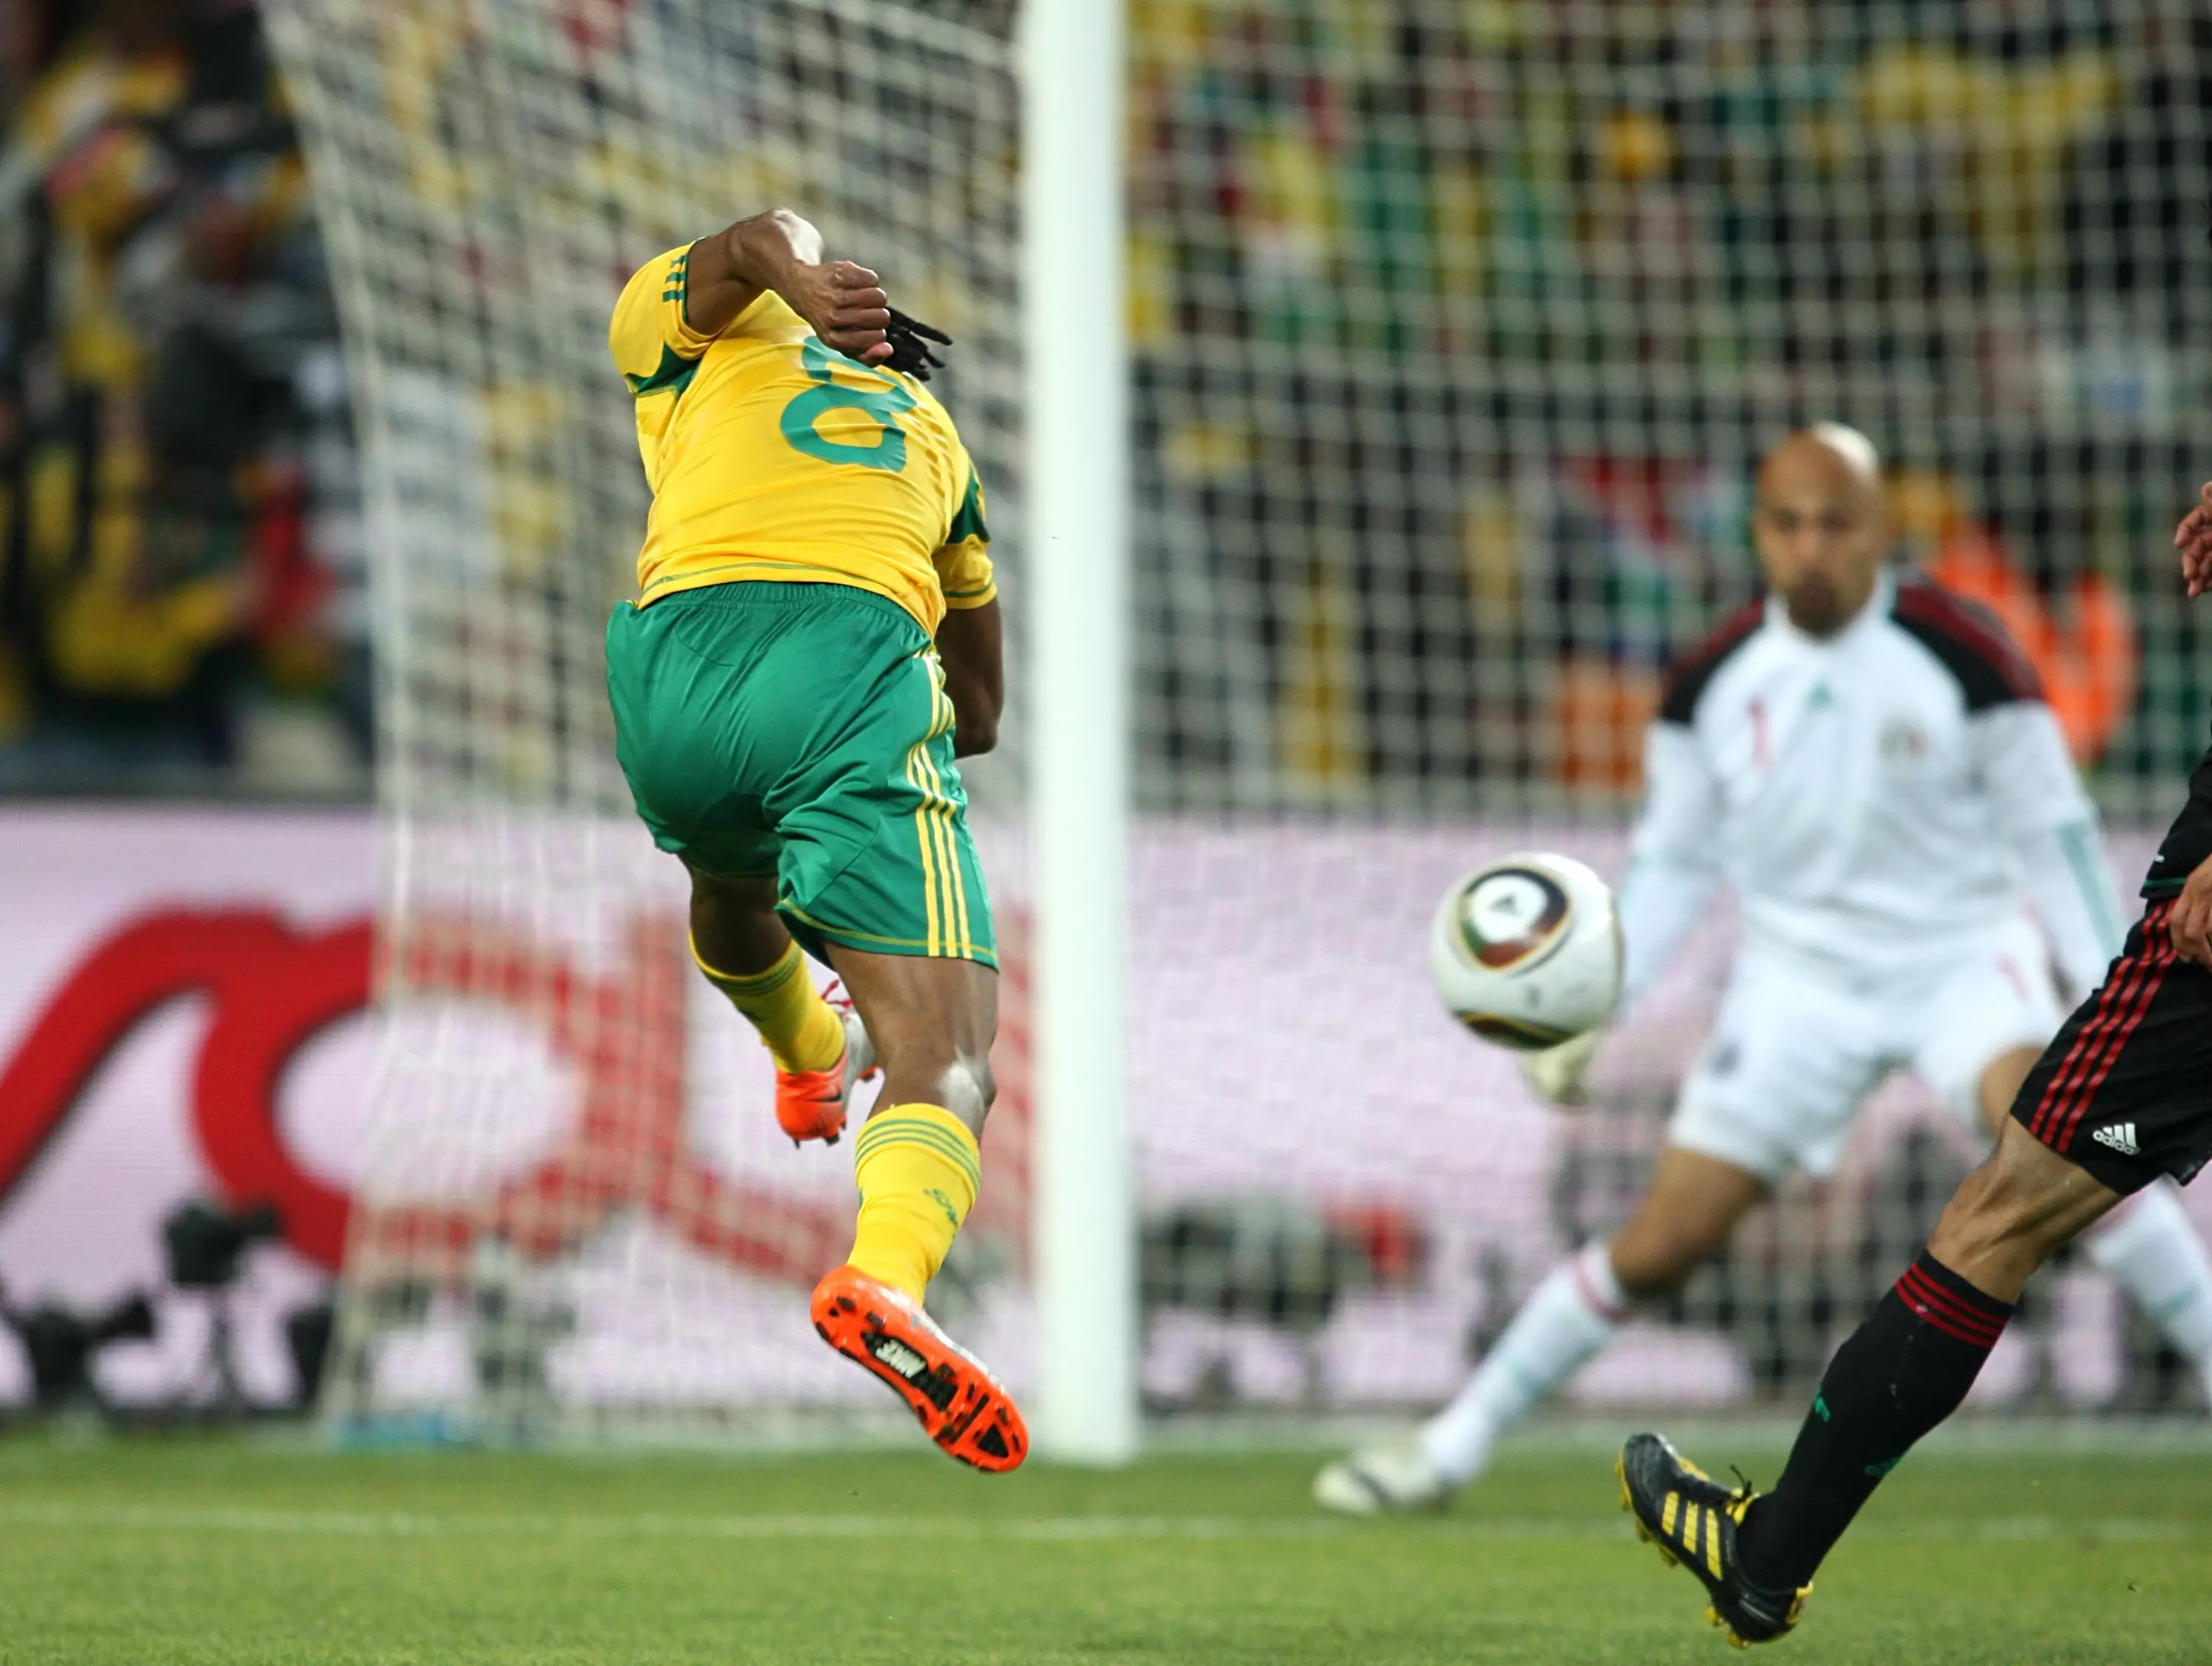 Siphiwe Tshabalala strikes the ball. Image: PA Images